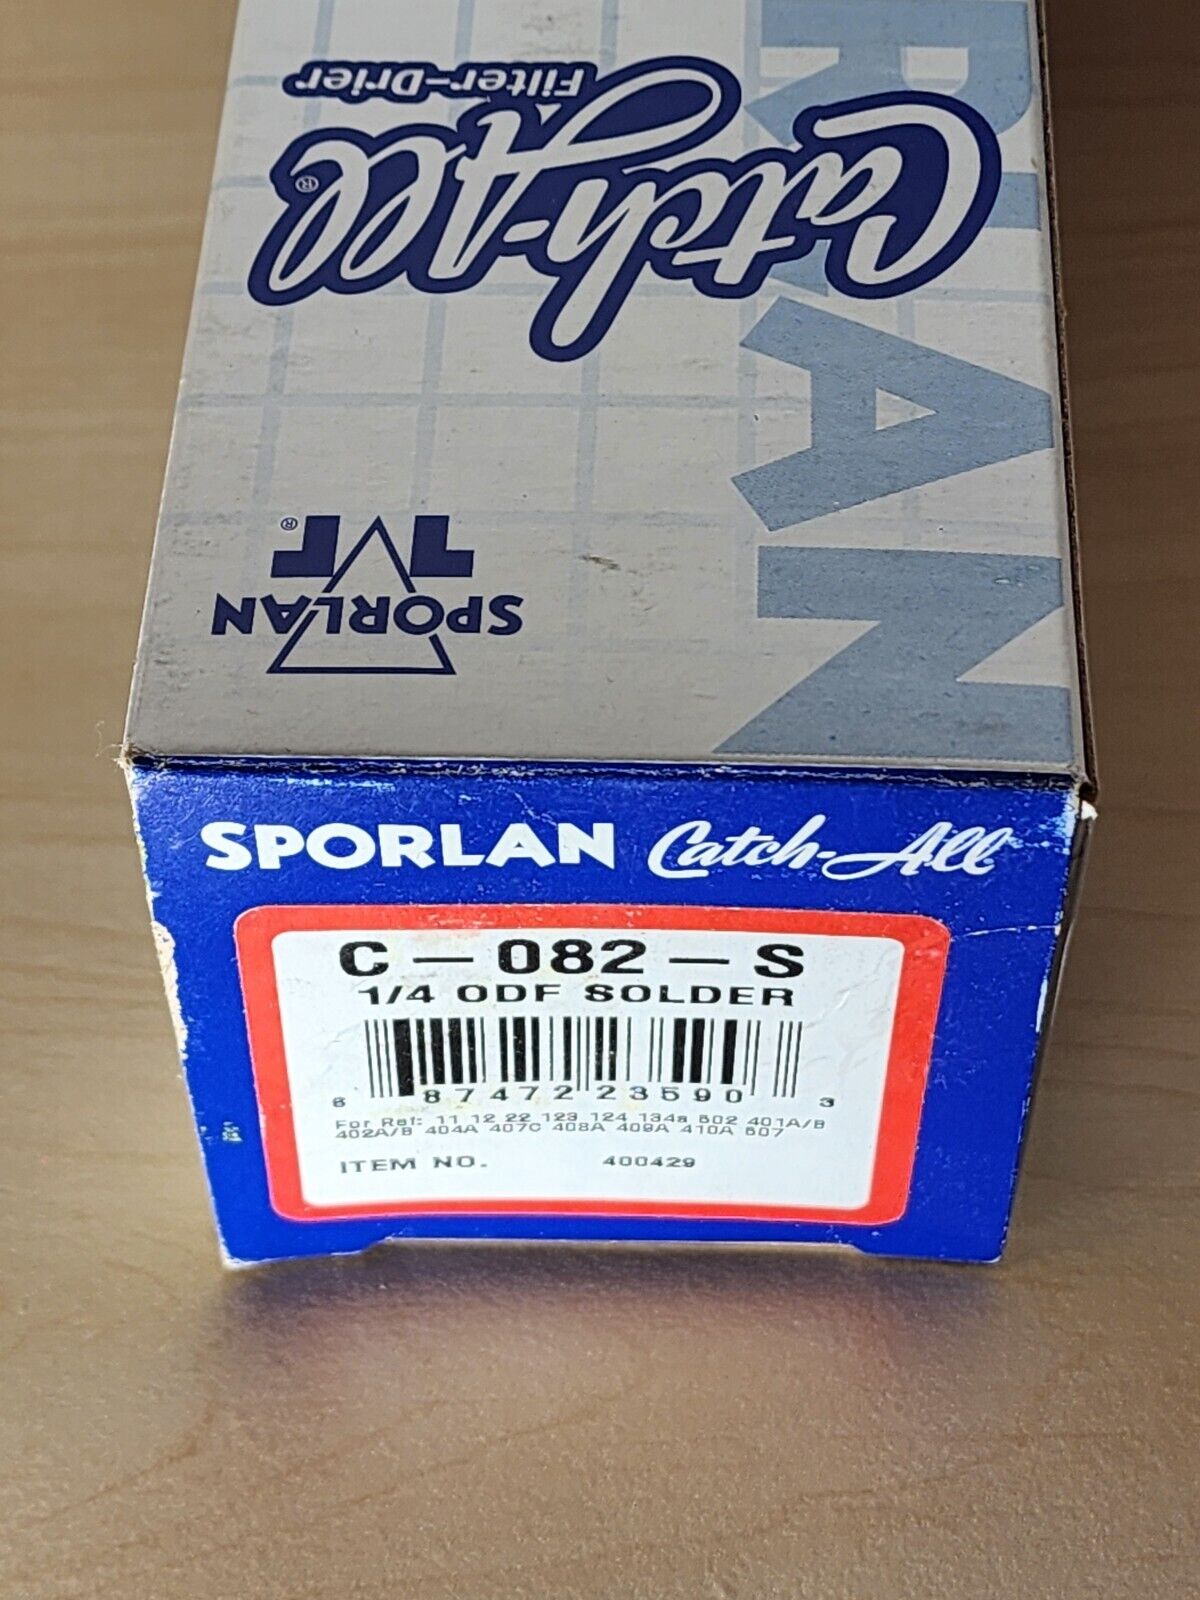 Sporlan 400429 C-082-S Filter Drier, sealed, 1/4\